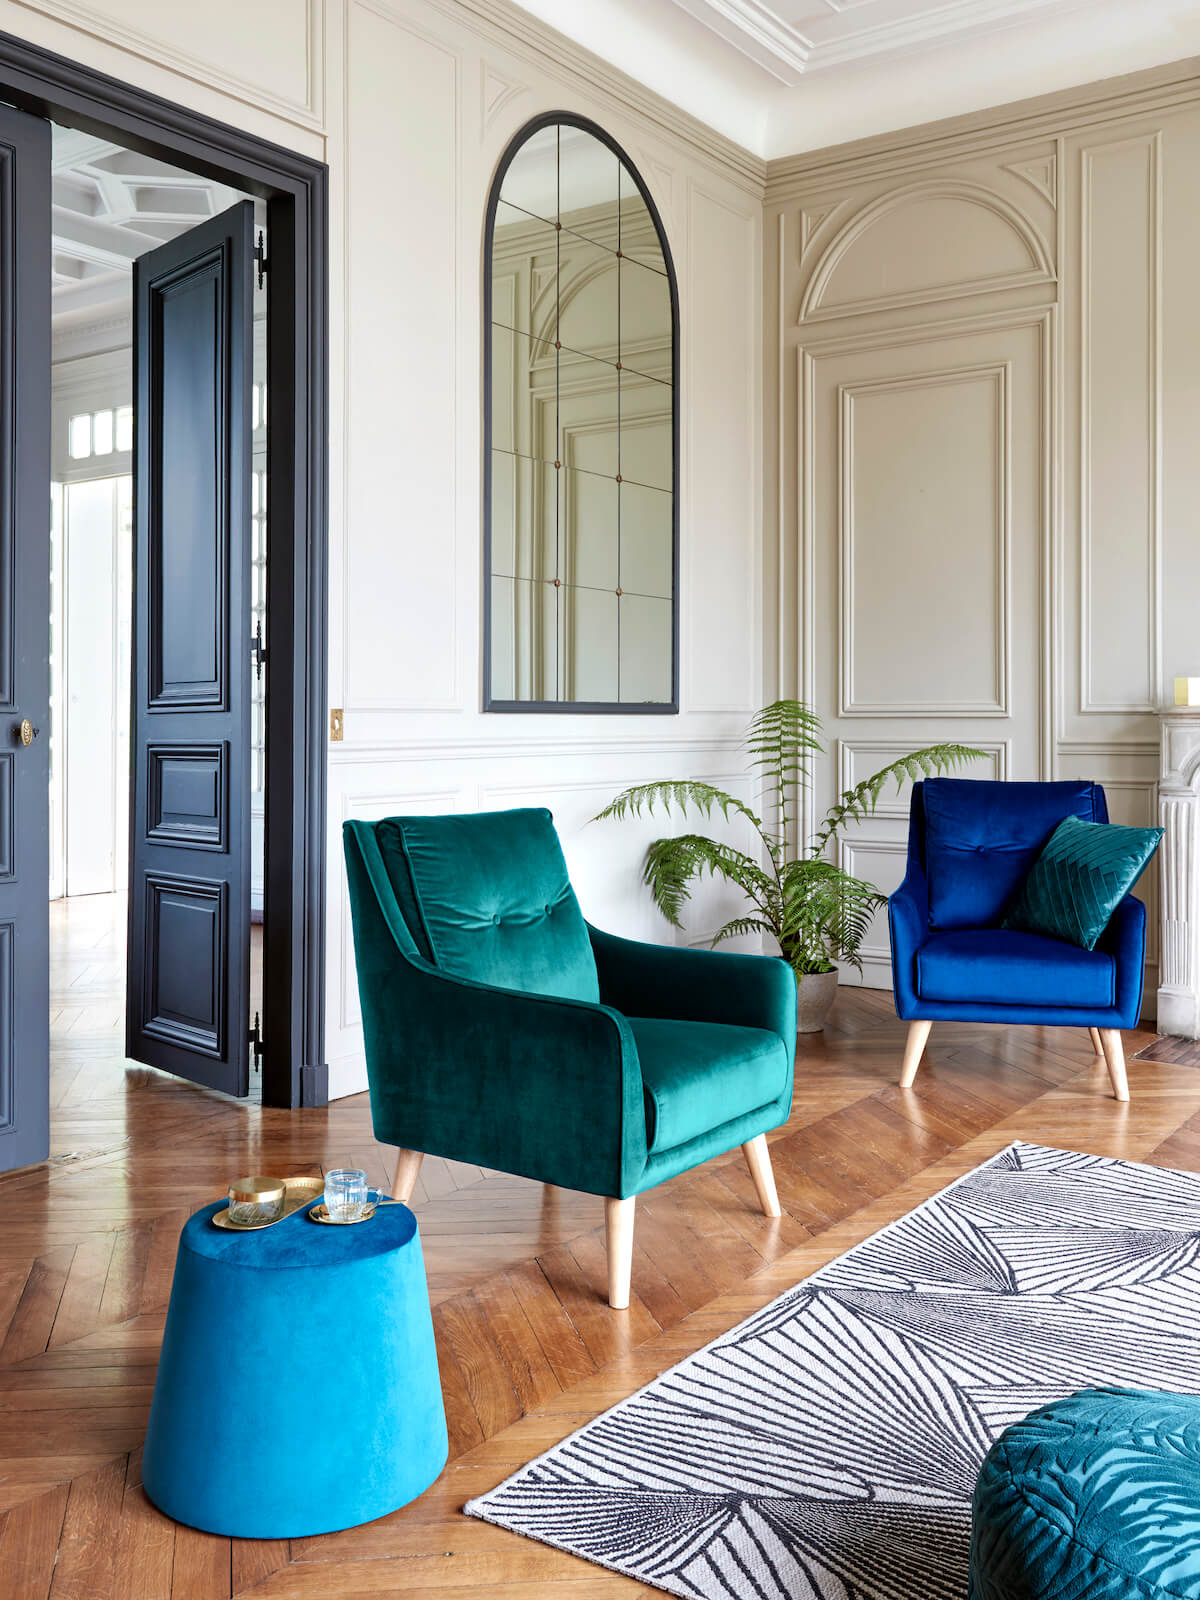 But reinvents Parisian interiors (1)